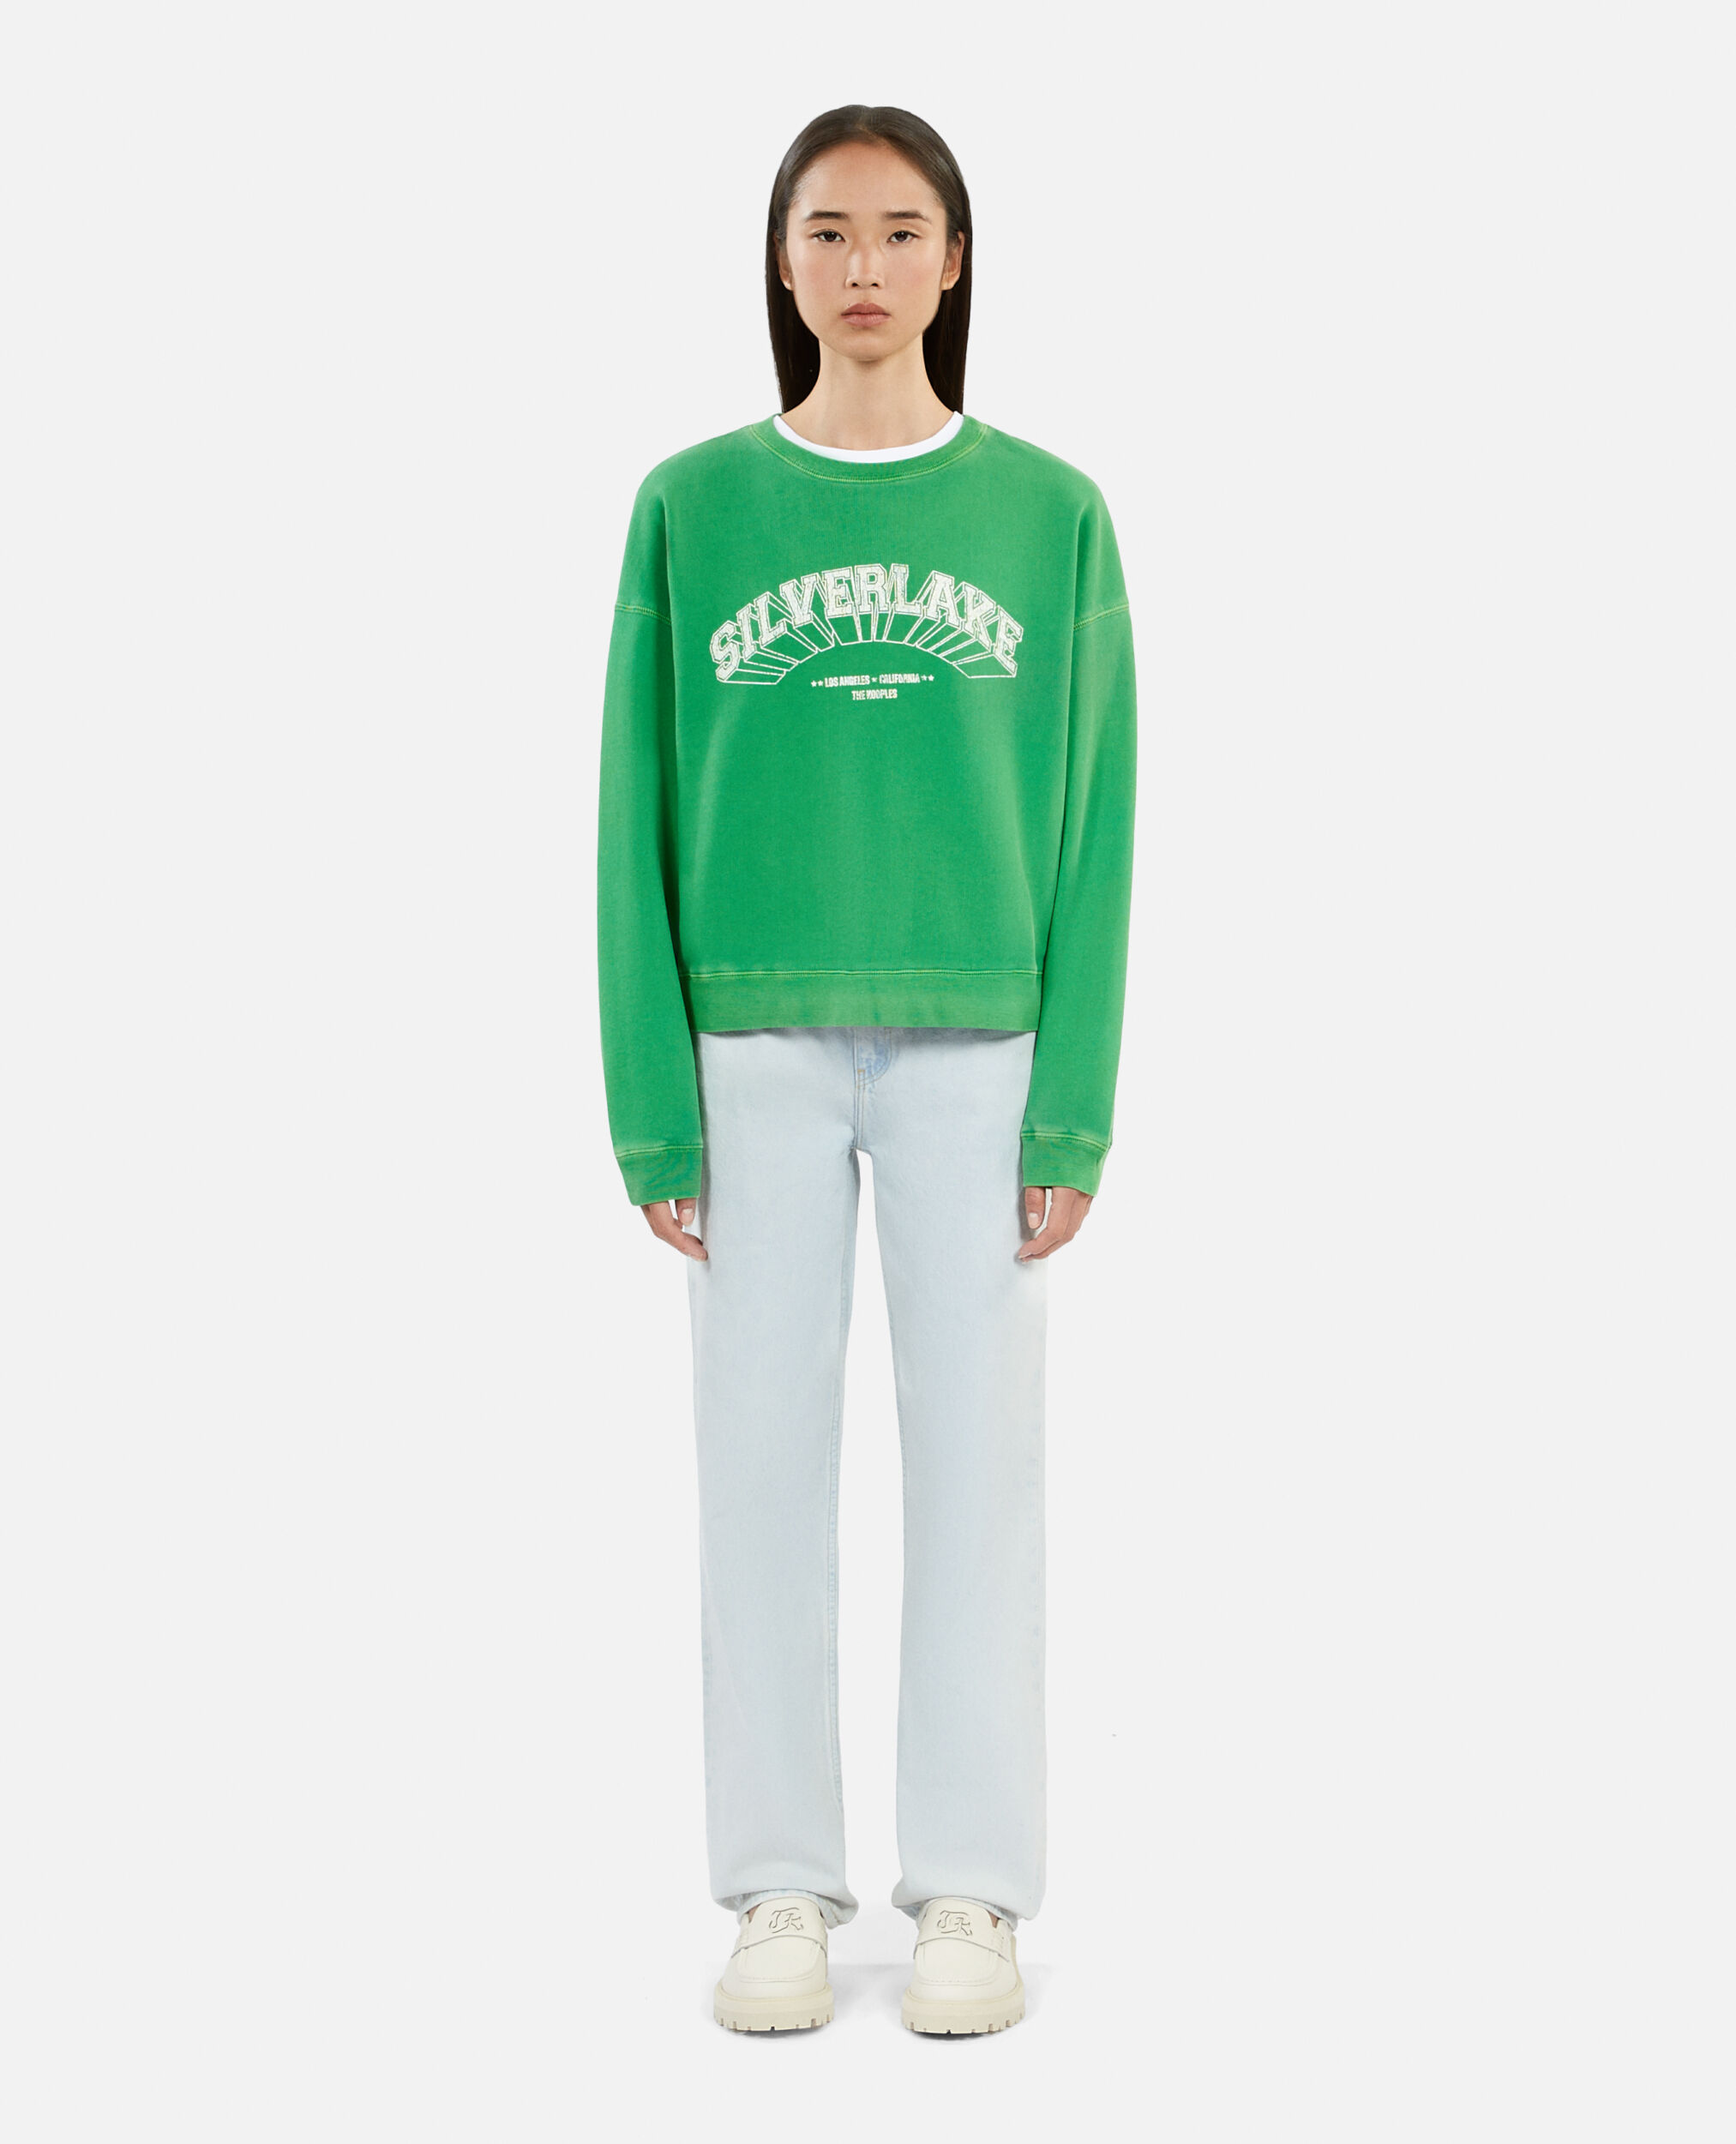 Grünes Sweatshirt mit Silverlake-Siebdruck, GREEN, hi-res image number null